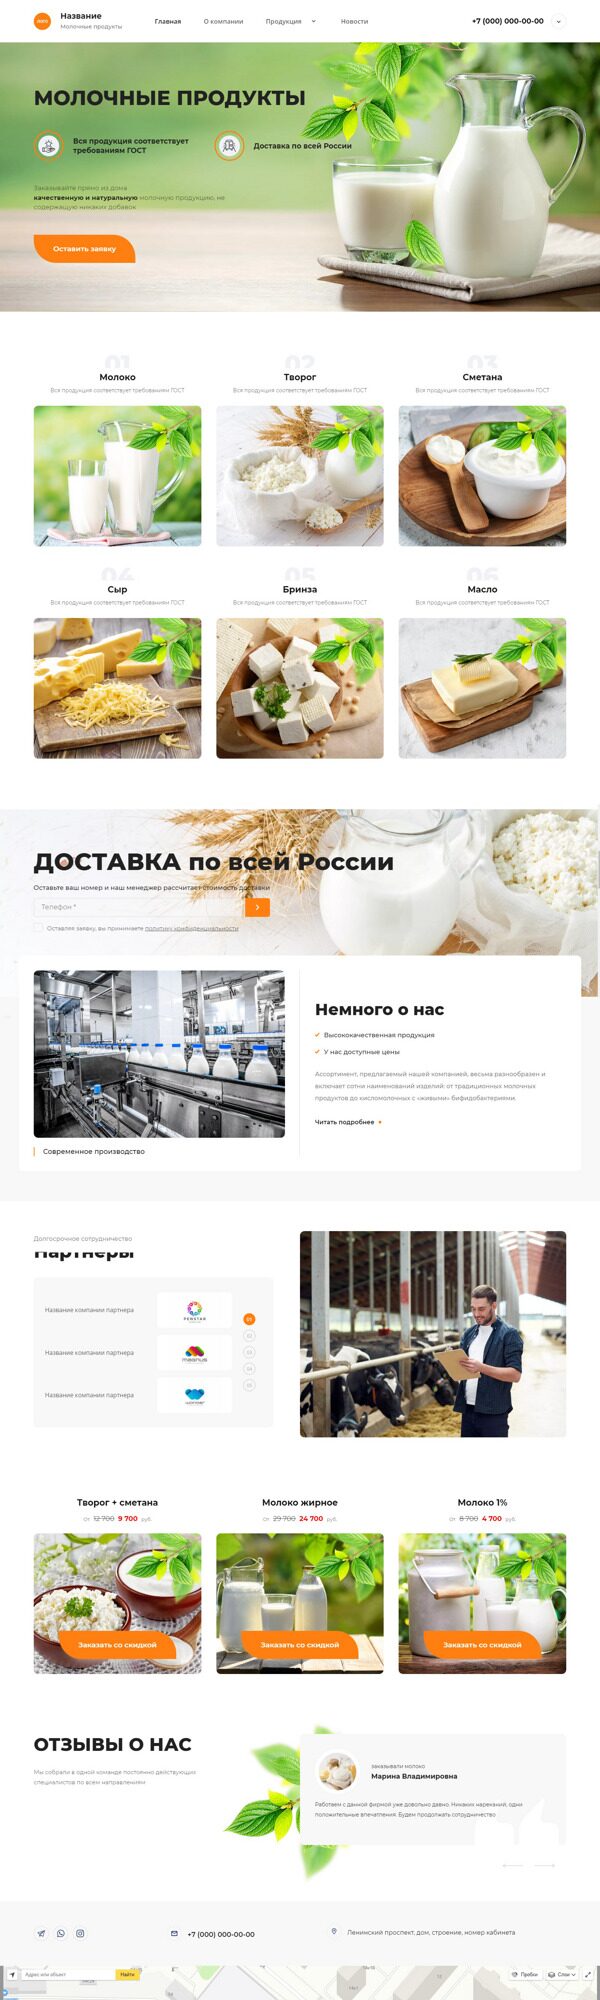 Готовый Сайт-Бизнес № 4186043 - Молочные продукты (Десктопная версия)